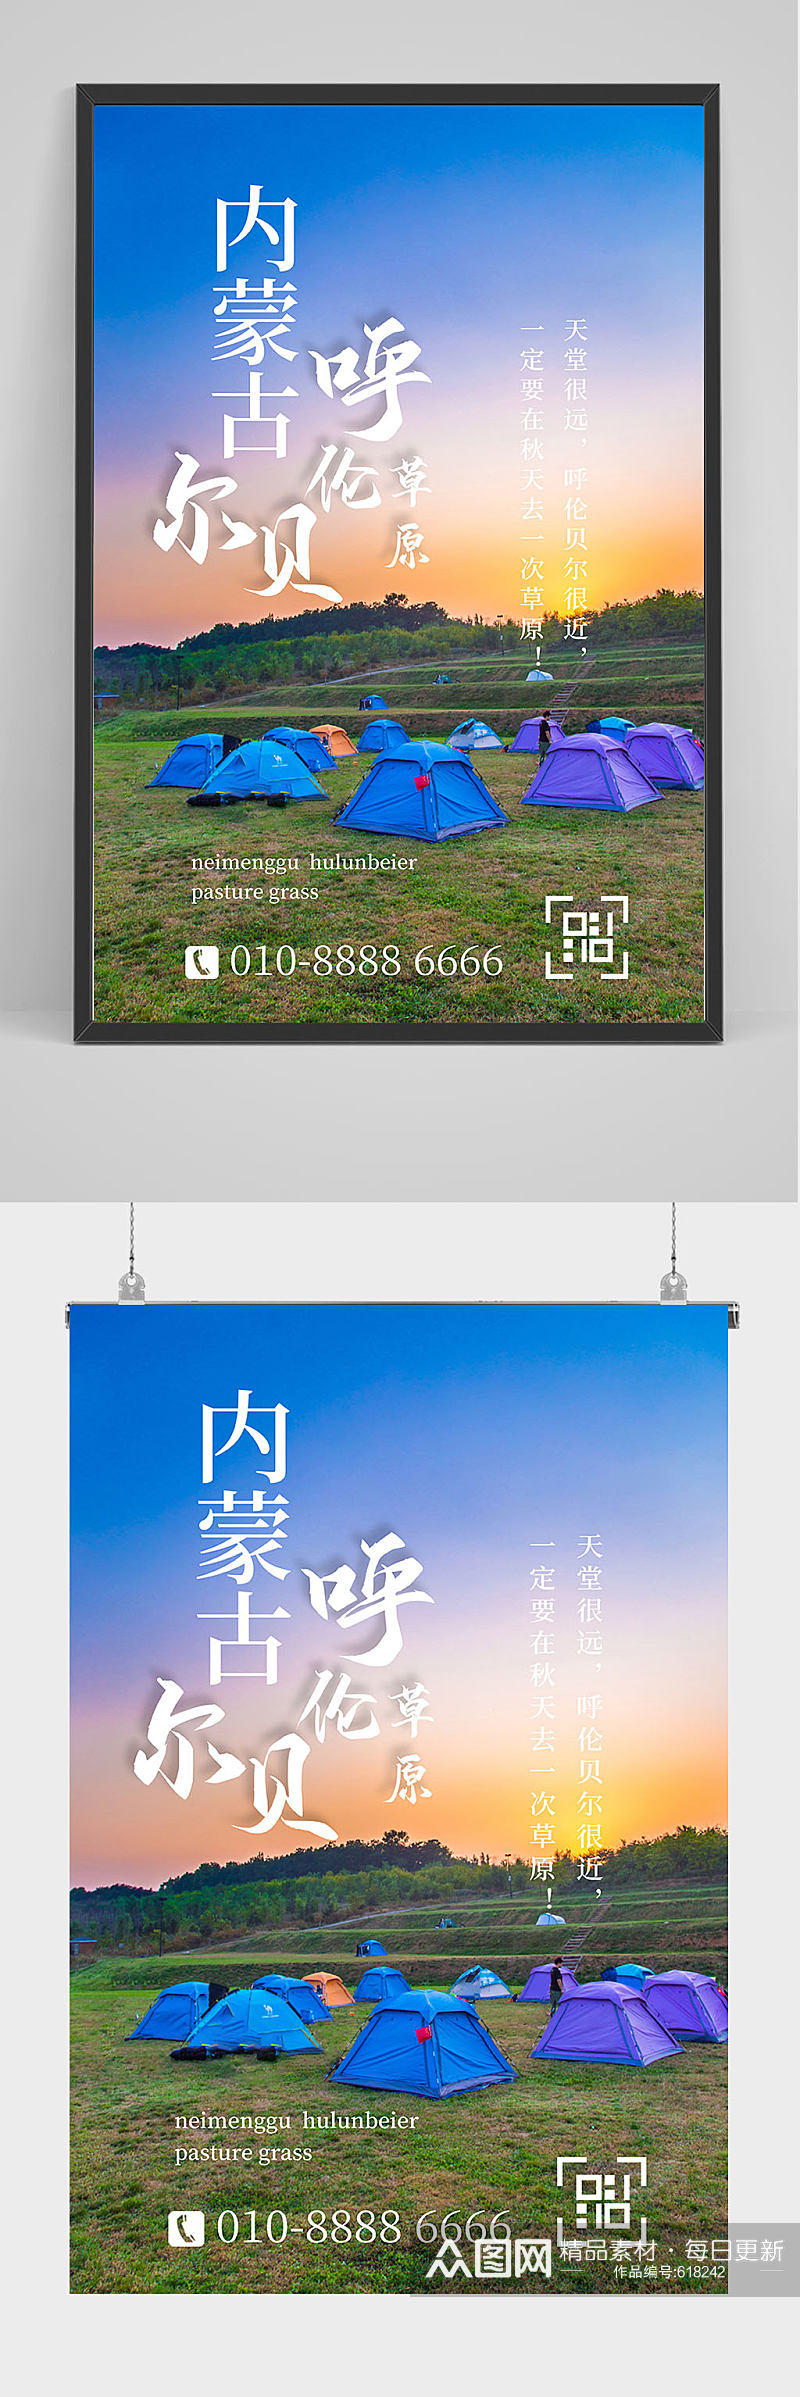 内蒙古旅游海报设计素材